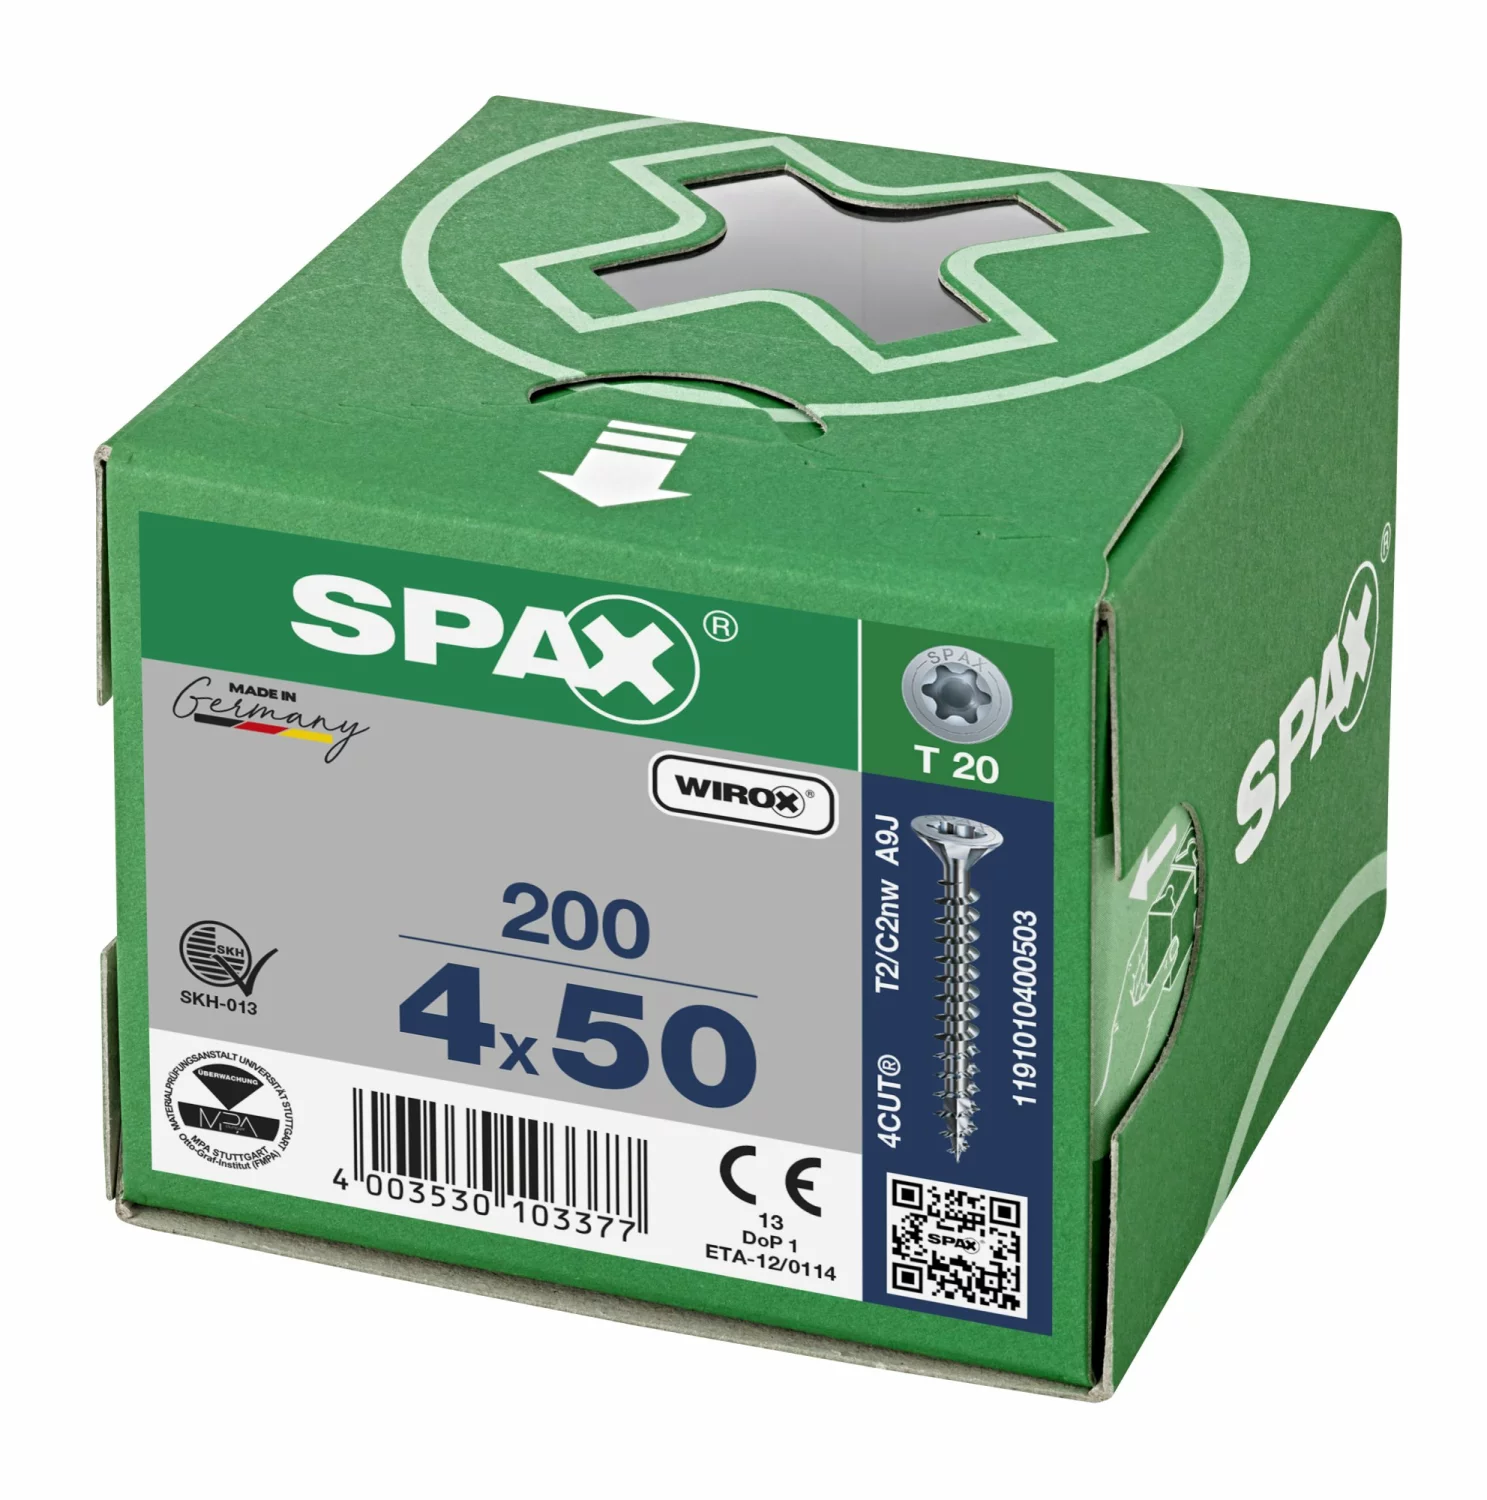 SPAX 1191010400503 Universele schroef, Verzonken kop, 4 x 50, Voldraad, T-STAR plus T20 - WIROX - 200 stuks